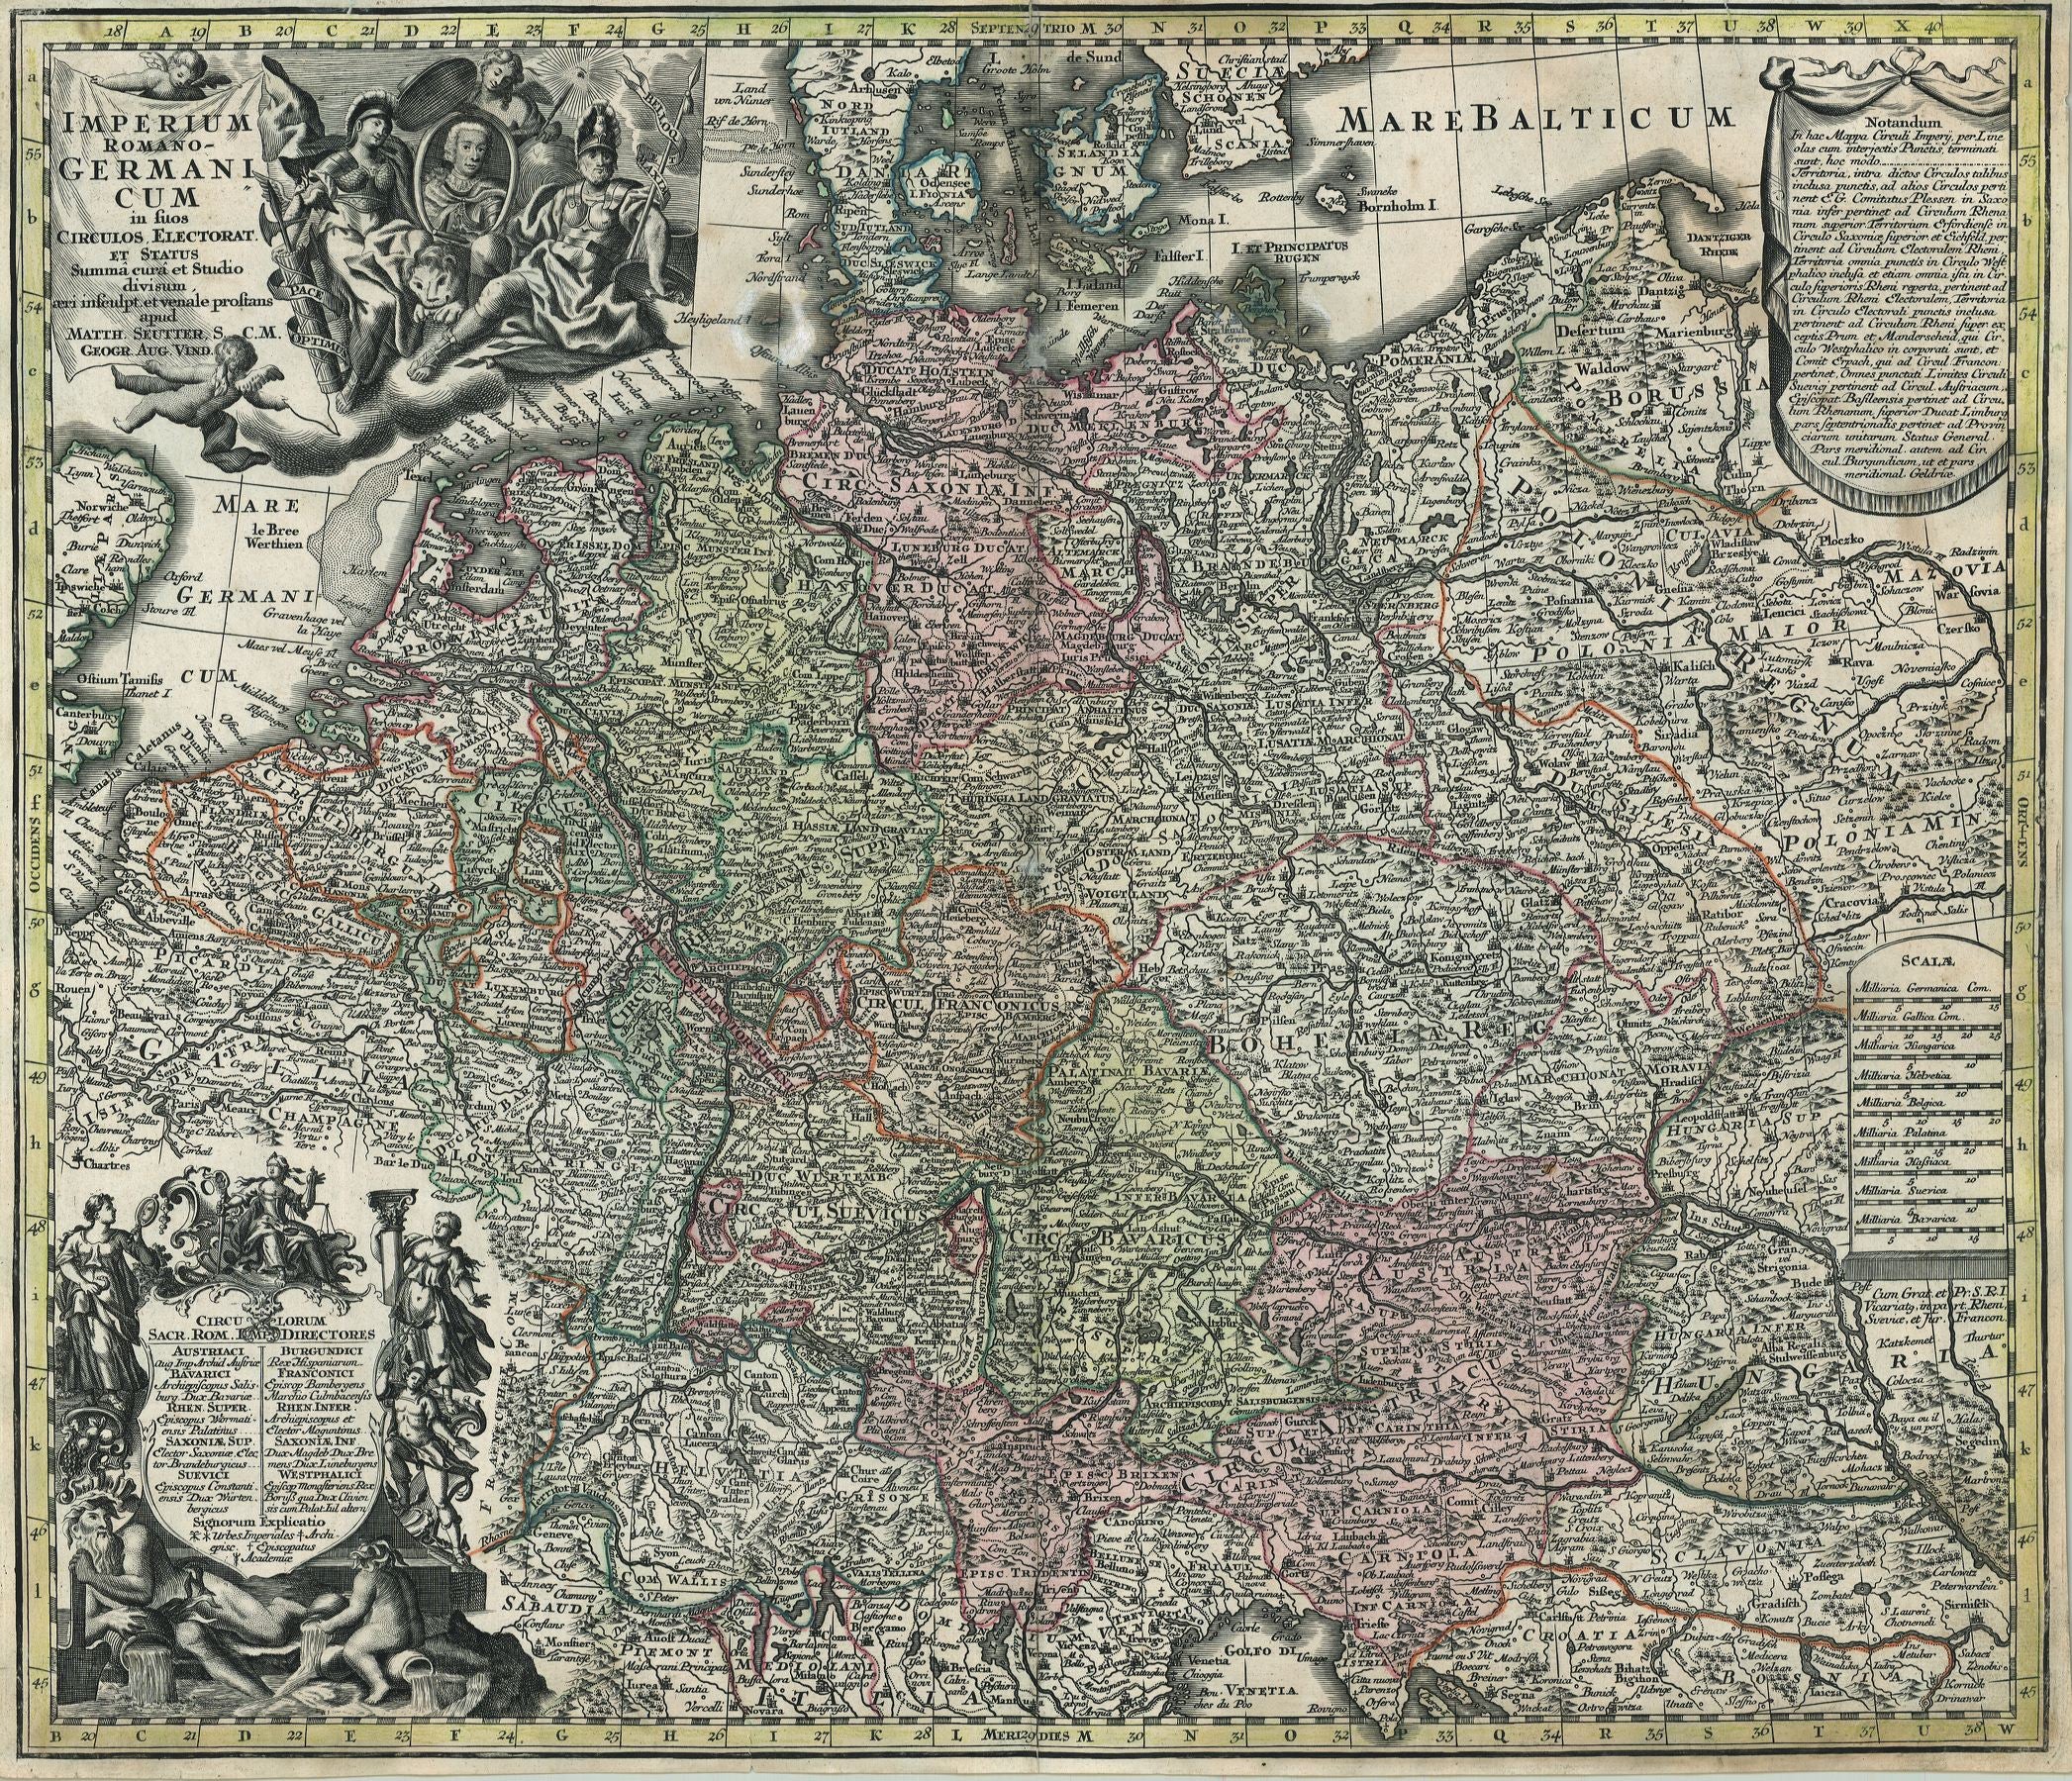 Deutschland in der Zeit um 1745 von Matthias Seutter